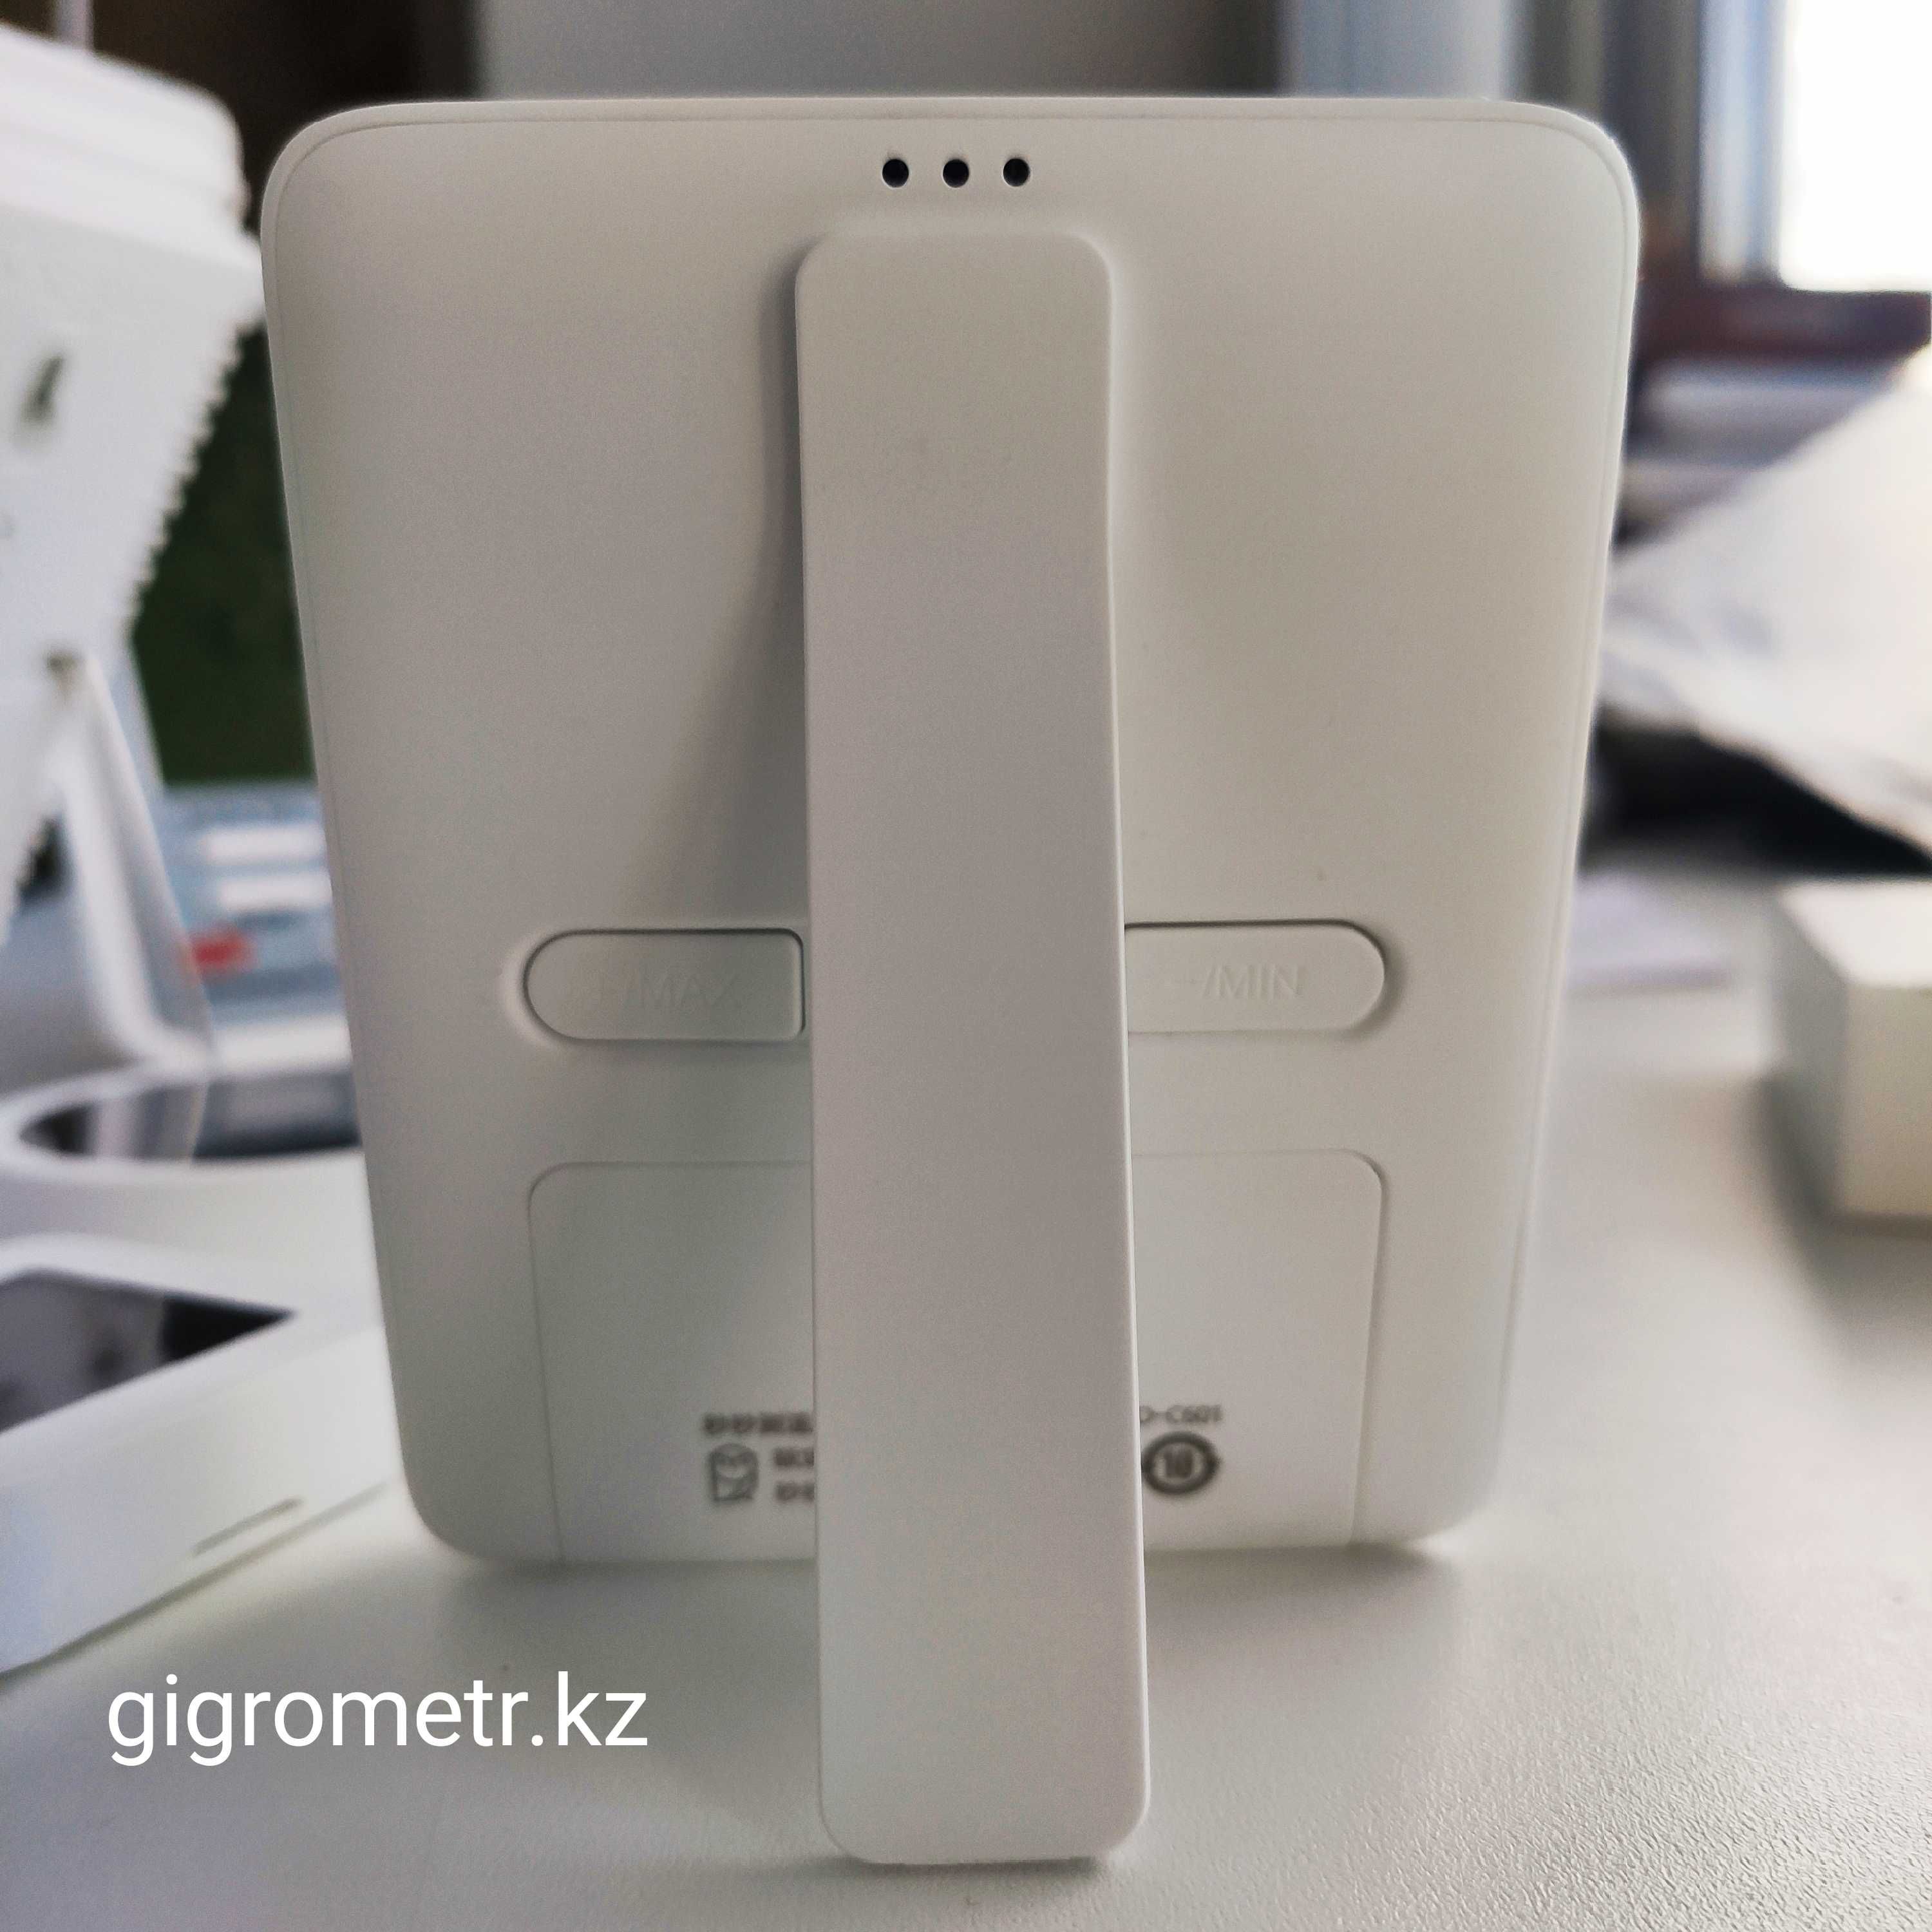 Скидка! ̶9̶7̶0̶0̶ тг.  Компактная (Гигрометр) станция Xiaomi  для дома